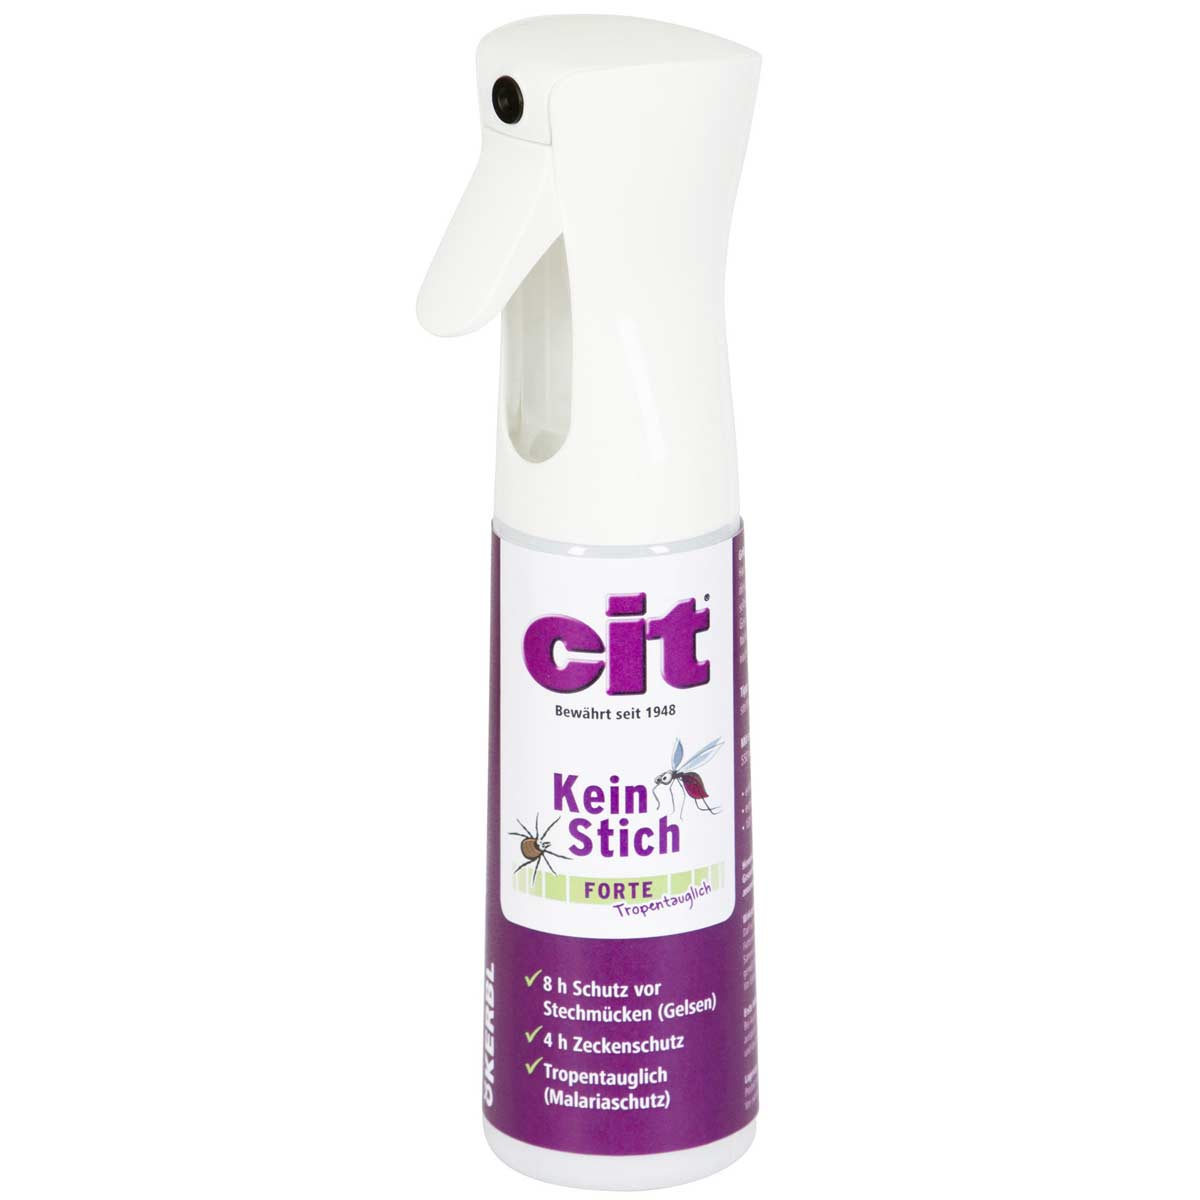 Cit KeinStich Forte Spray antizanzare, antizecche e repellente per insetti 300 ml